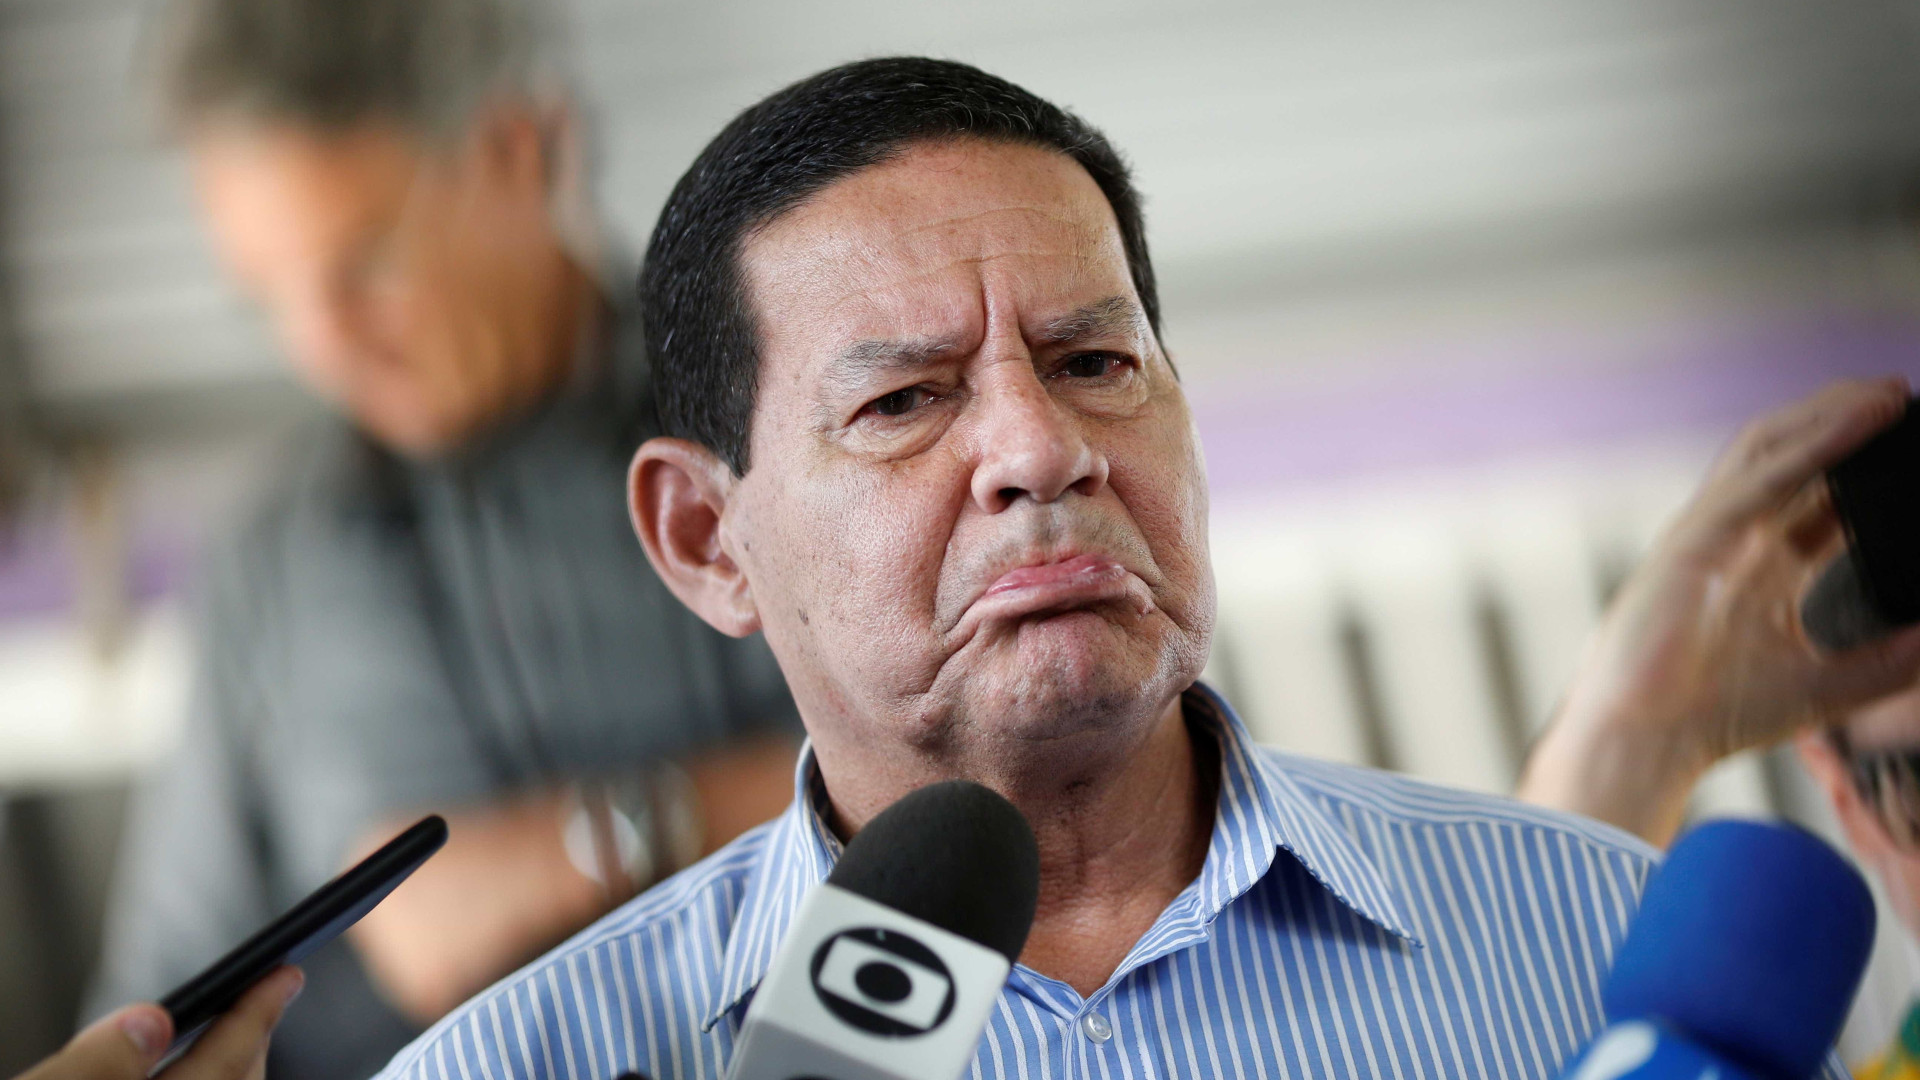 Primeira medida é ajuste da economia, diz vice de Bolsonaro